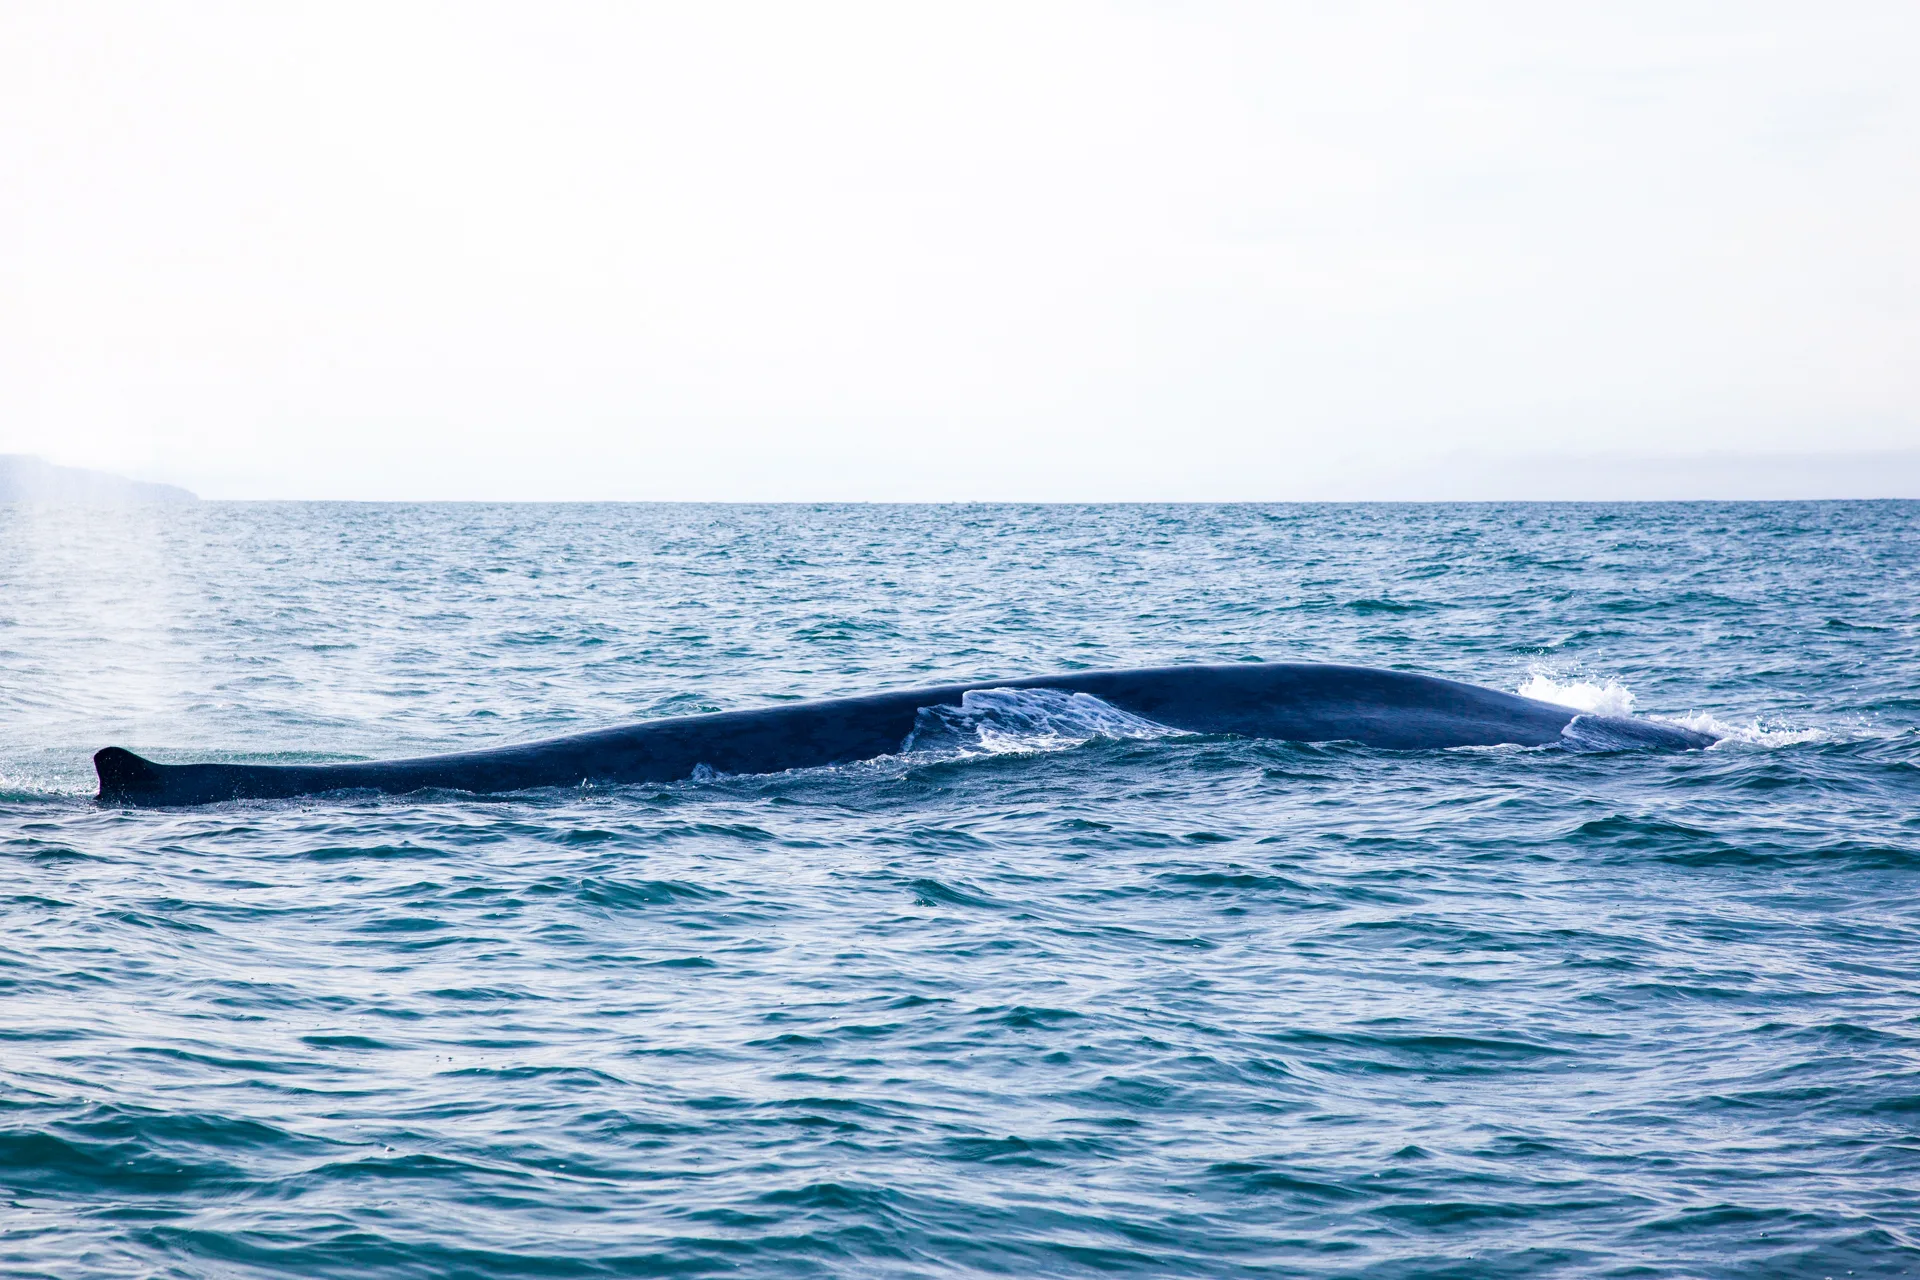 Walbeobachtung Whalewatching Islandreisen Katla Travel Ausflüge Per Boot
Walbuckel im Wasser